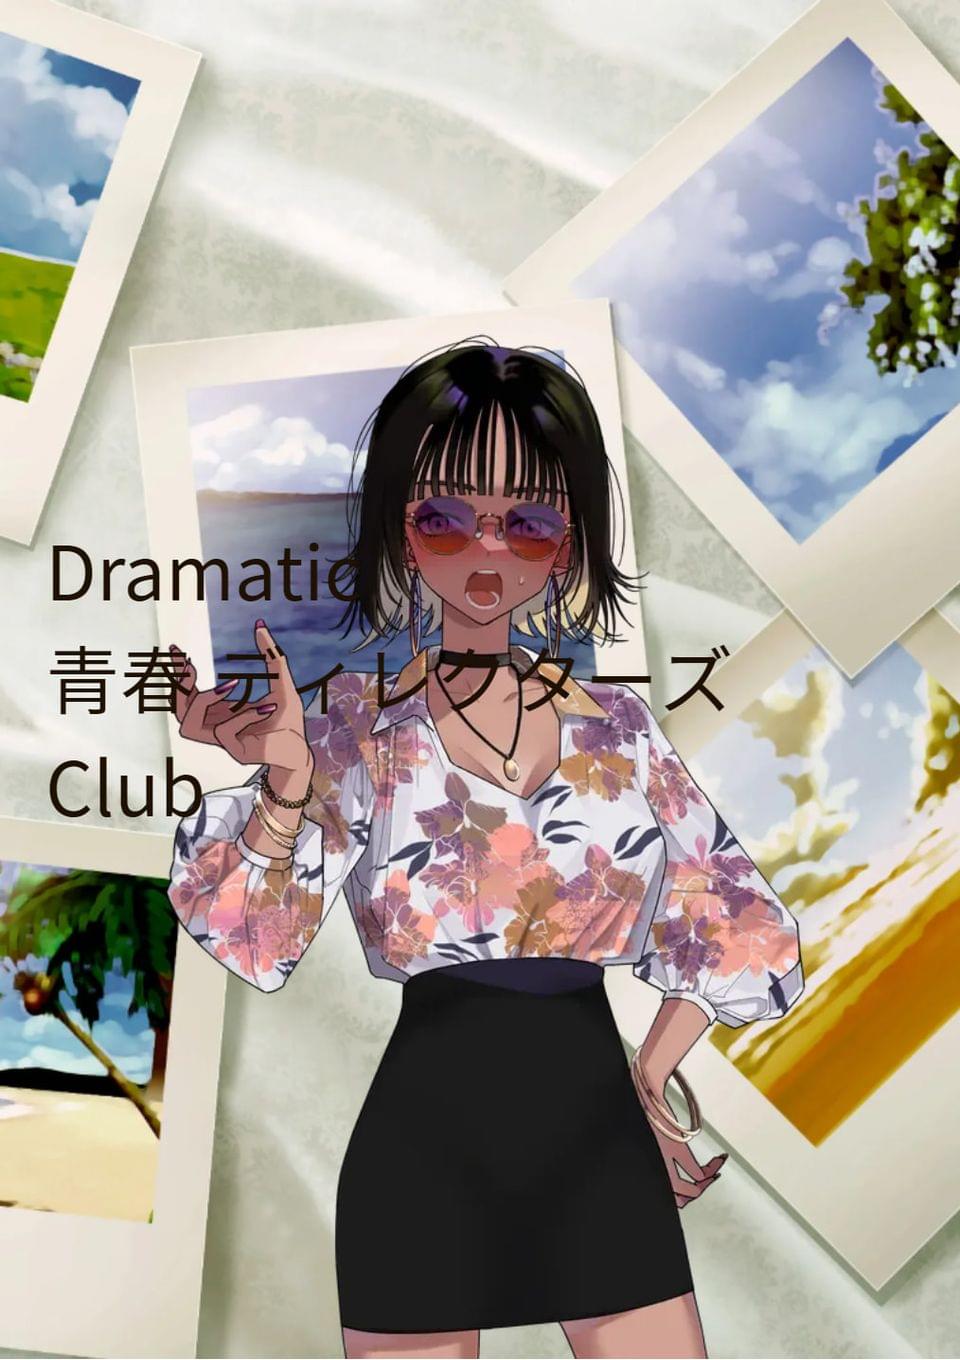 Dramatic 青春 ディレクターズ Club